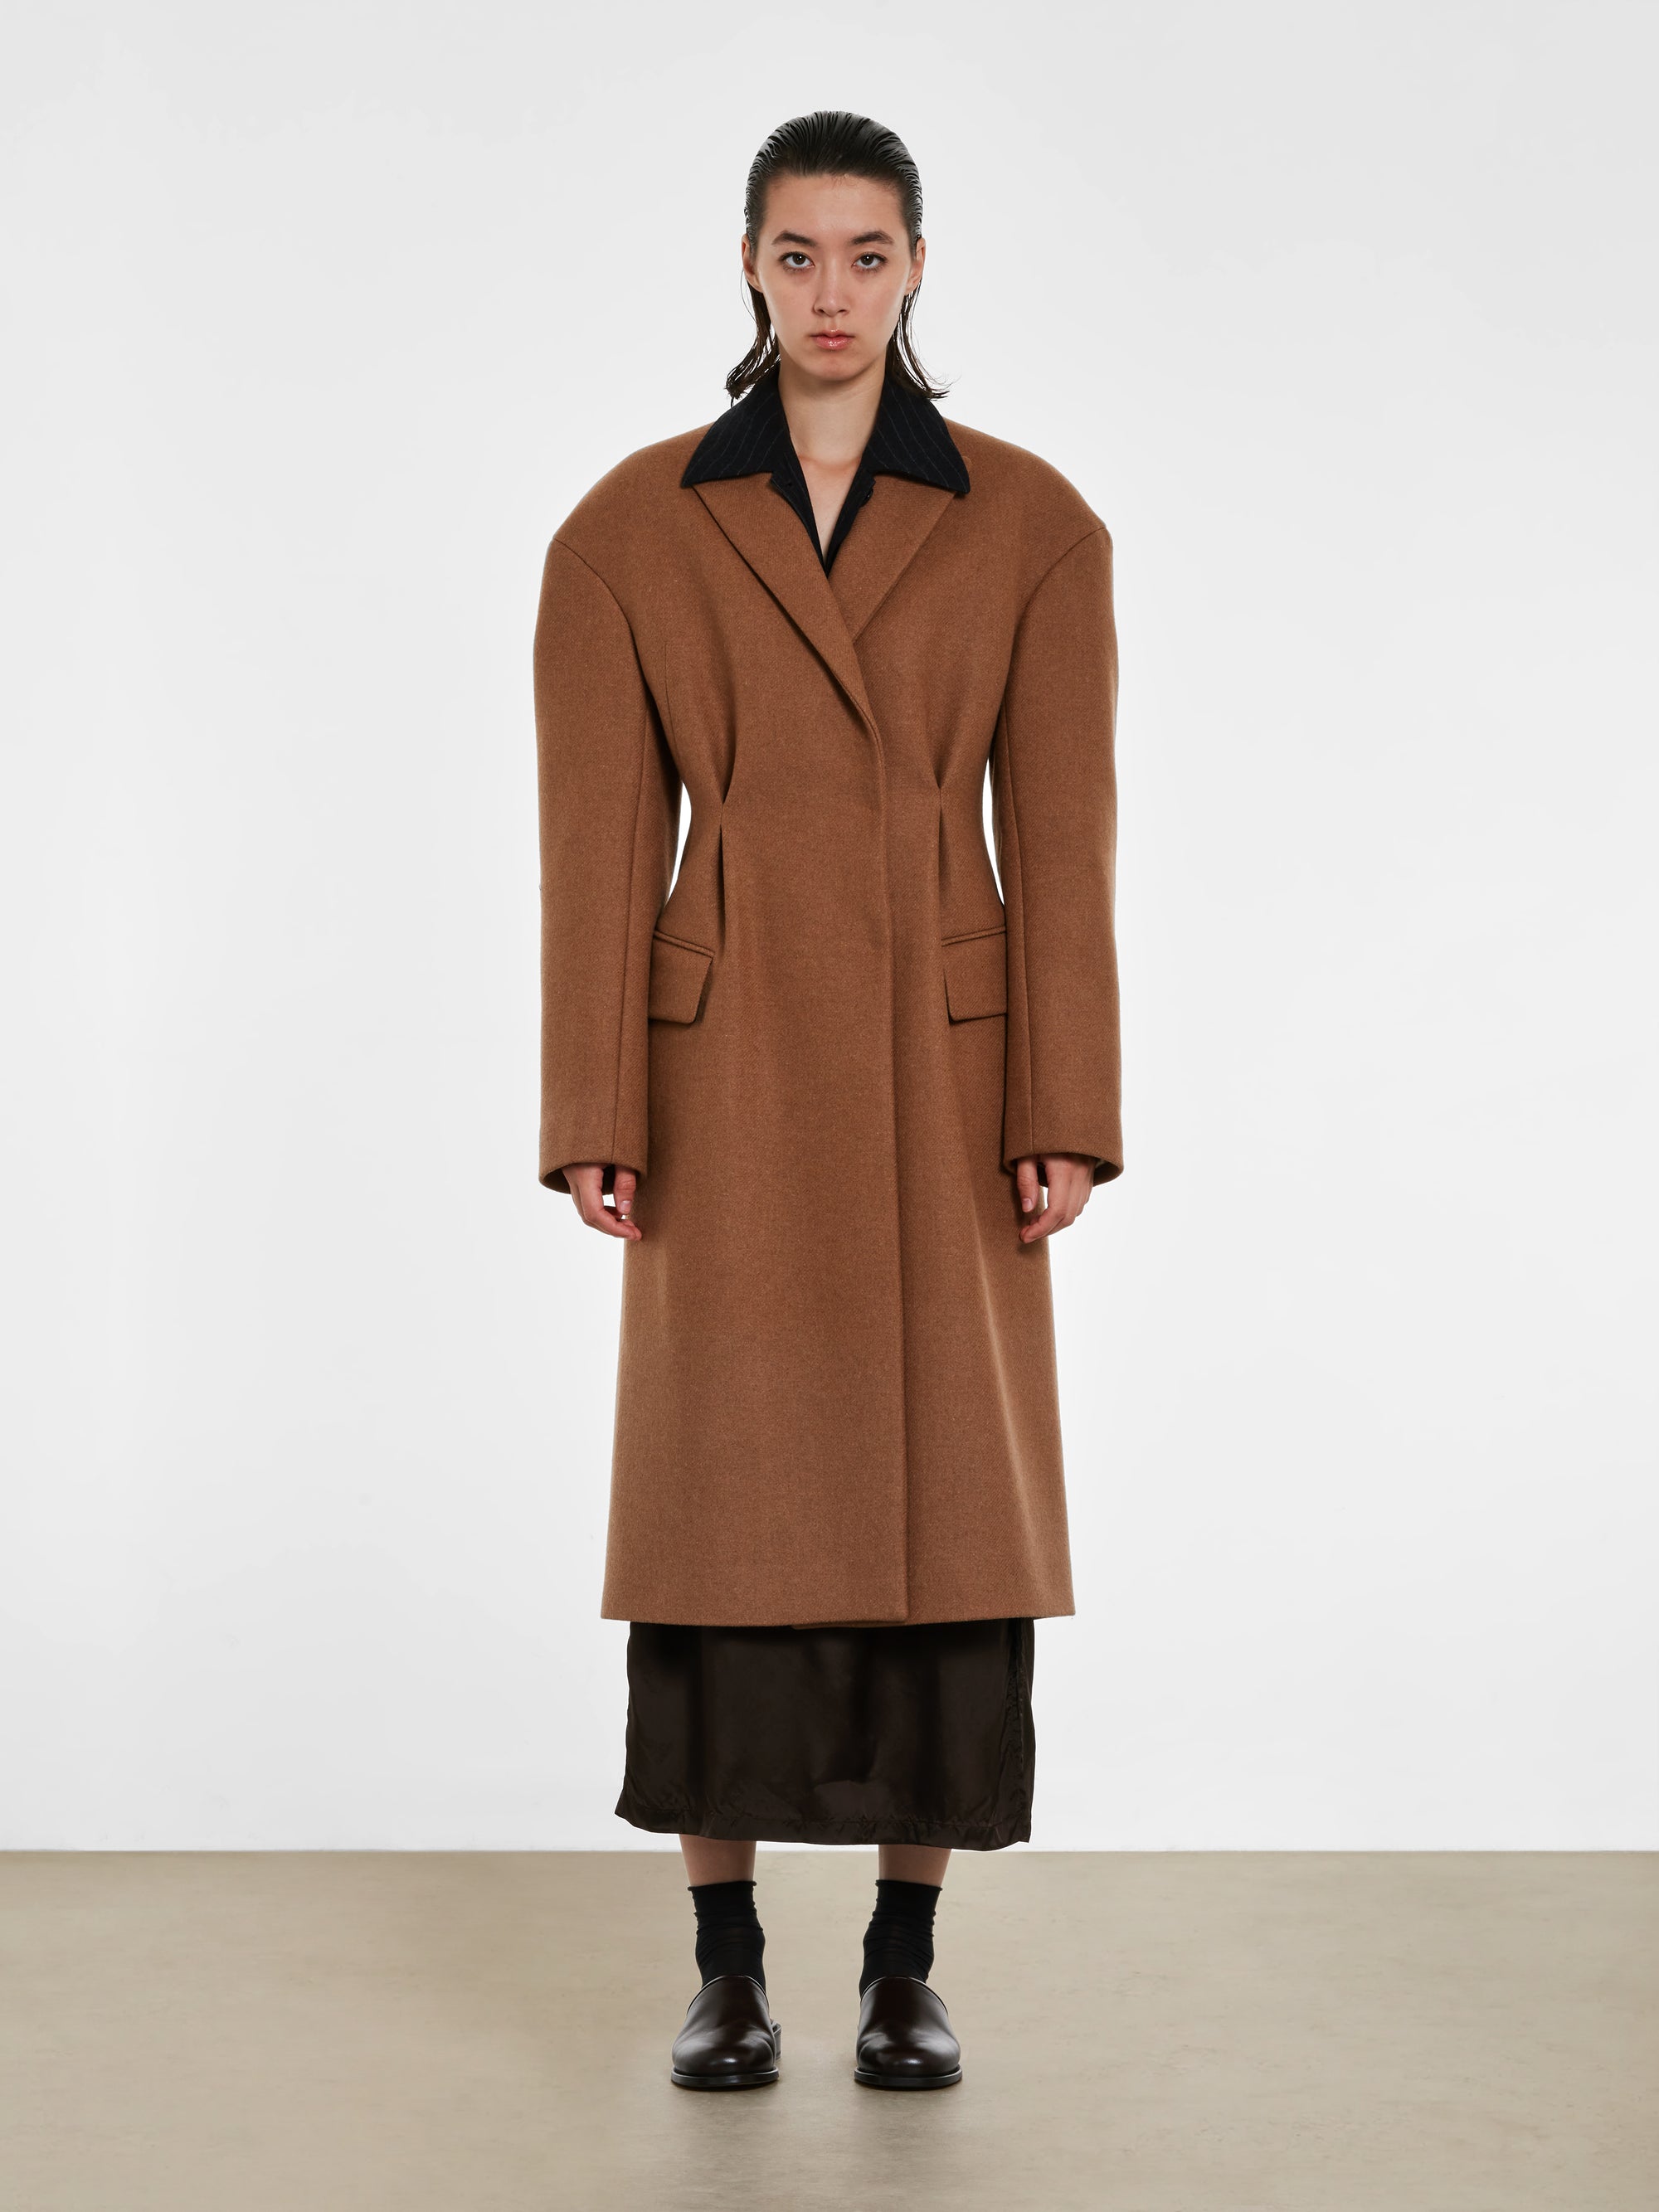 Dries Van Noten - Women’s Waisted Wool Coat - (Camel) view 4